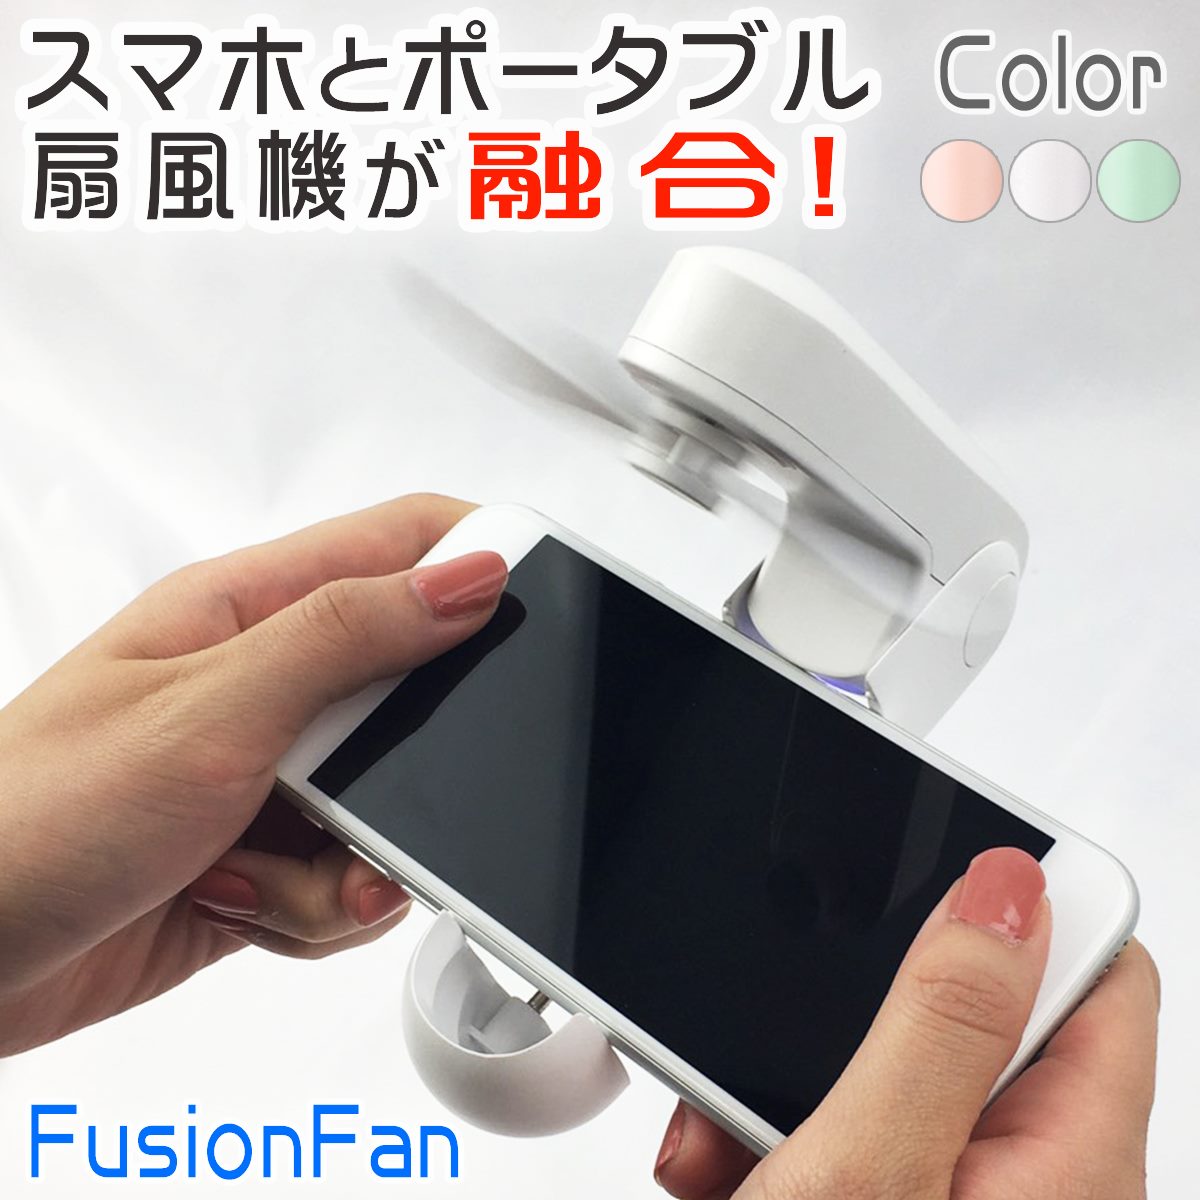 FusionFun ハンディファン ハンディ 扇風機 手持ち扇風機 卓上扇風機 ミニ扇風機 USB扇風機 ミニファン コンパクト 持ち運び 充電式 ポータブル扇風機 ポータブルファン 静音 折り畳み スタンド 携帯扇風機 熱中症対策